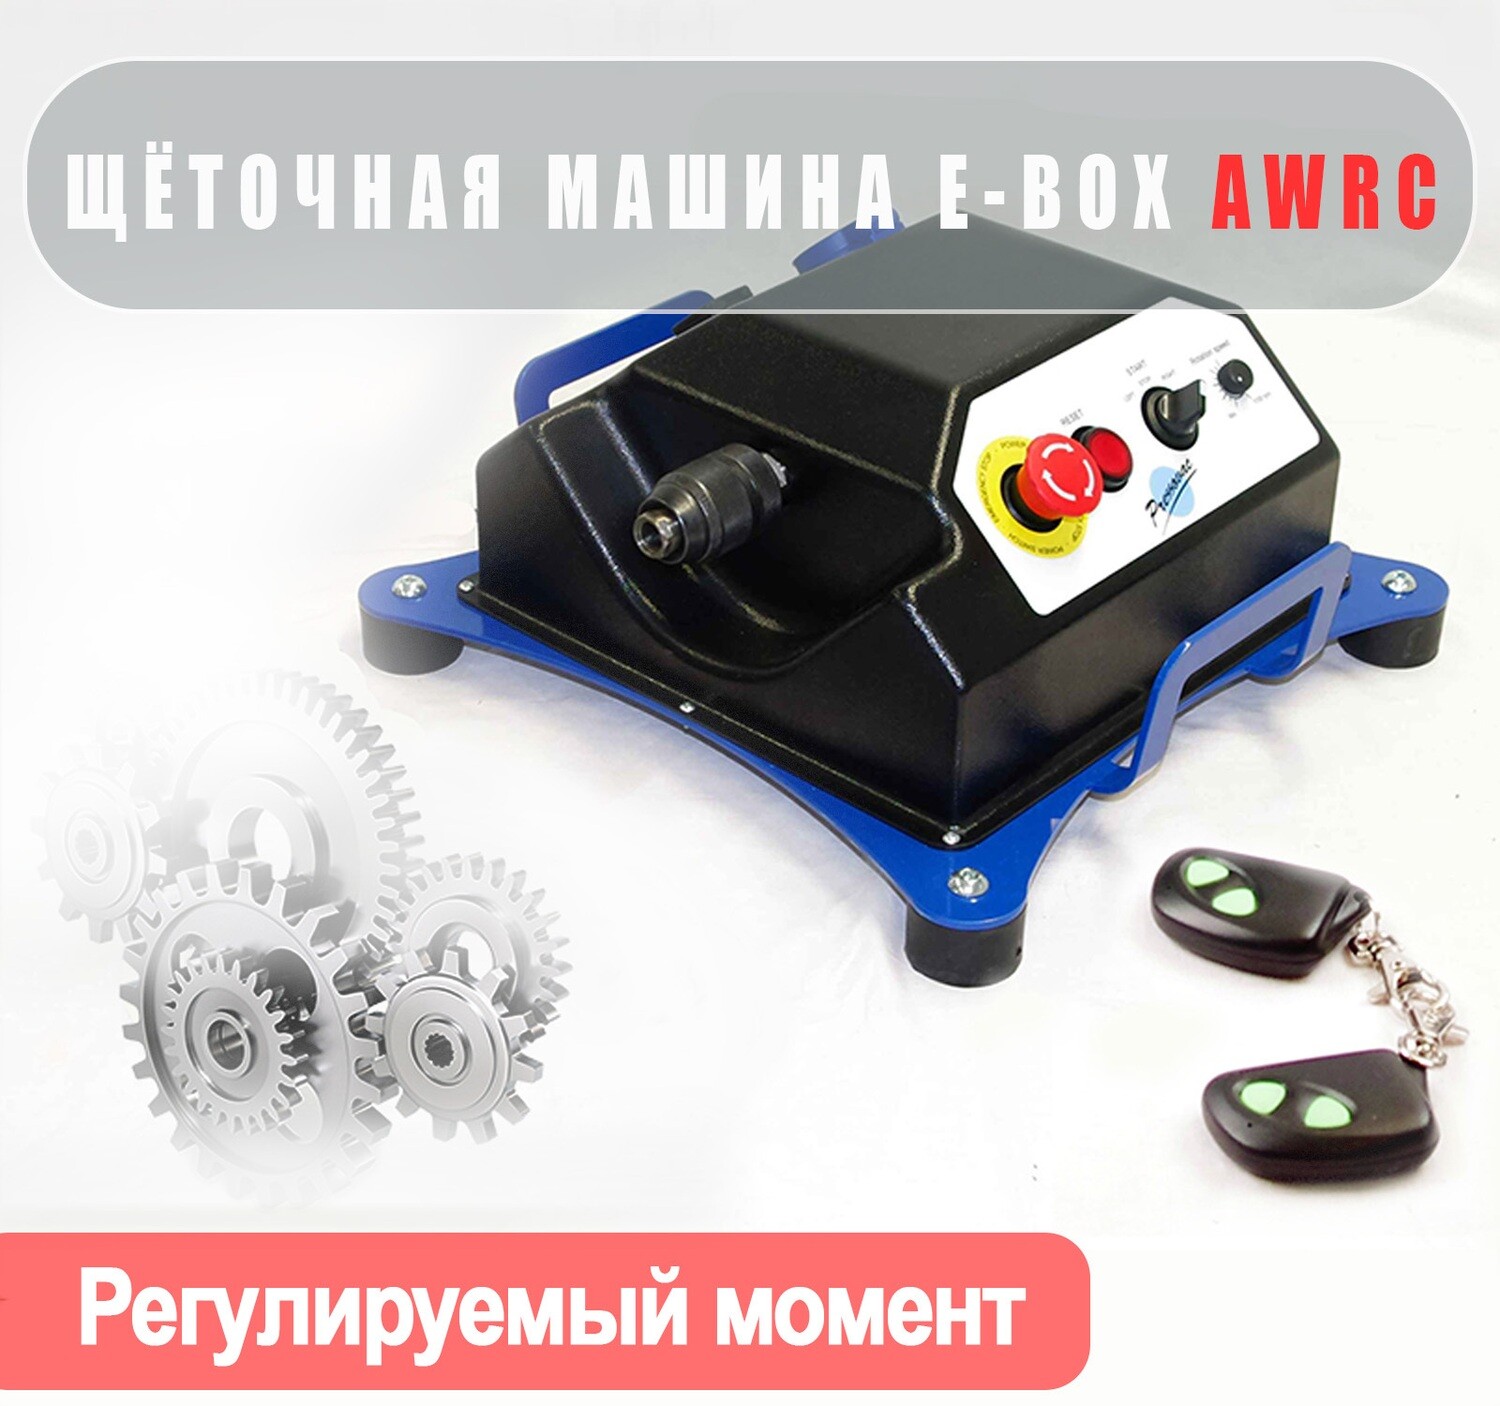 Электрическая машина E-BOX с беспроводным ПДУ (с регулировкой крутящего момента)